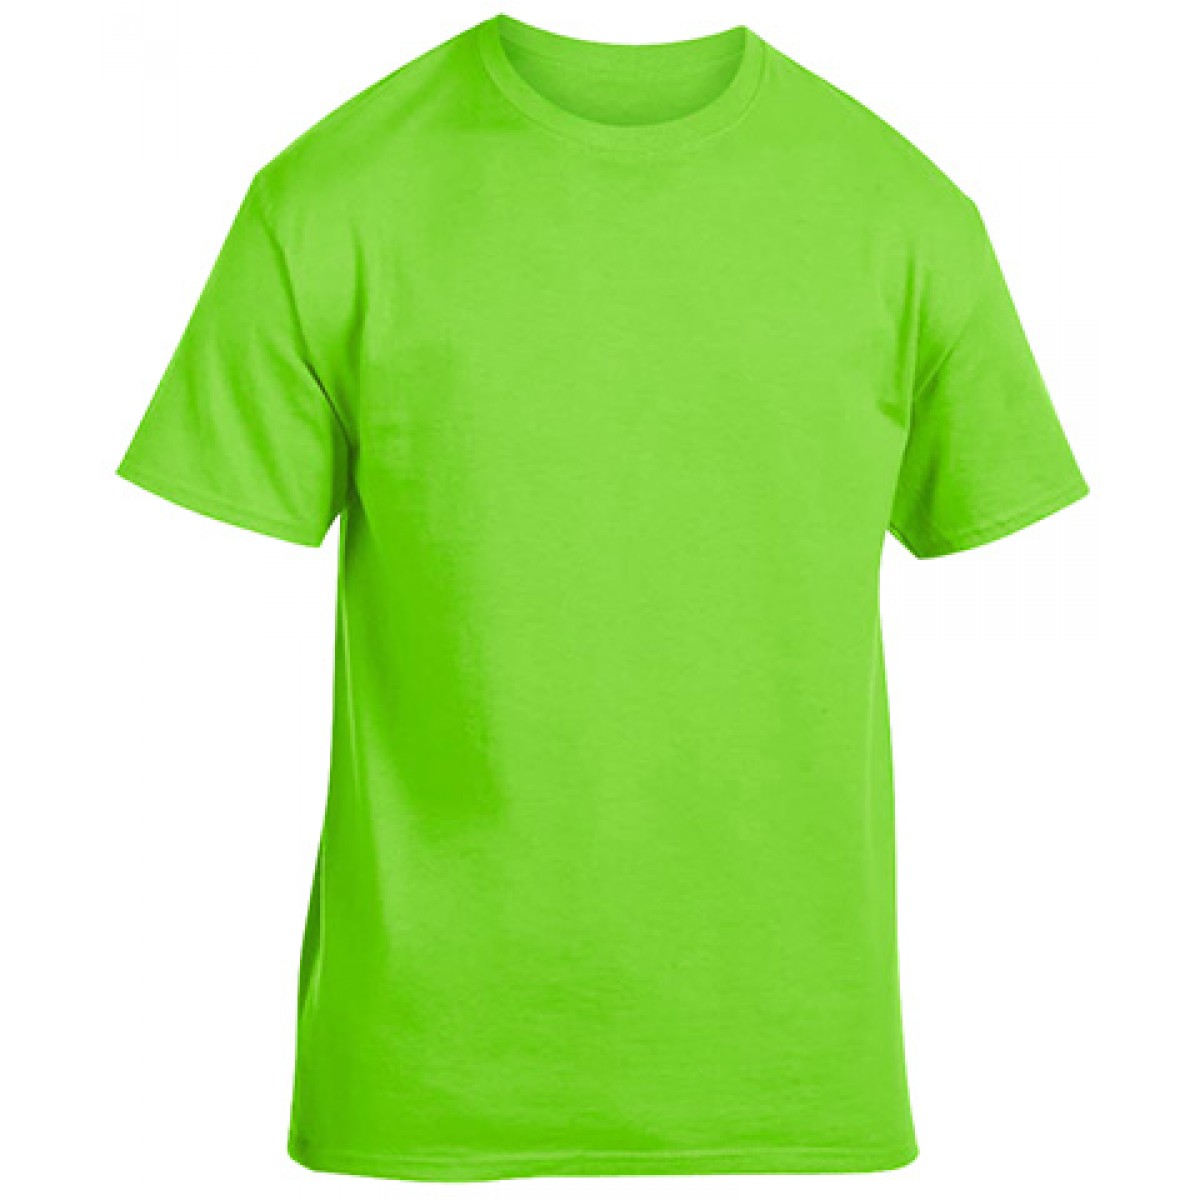 Soft 100% Cotton T-Shirt-Neon Green-3XL